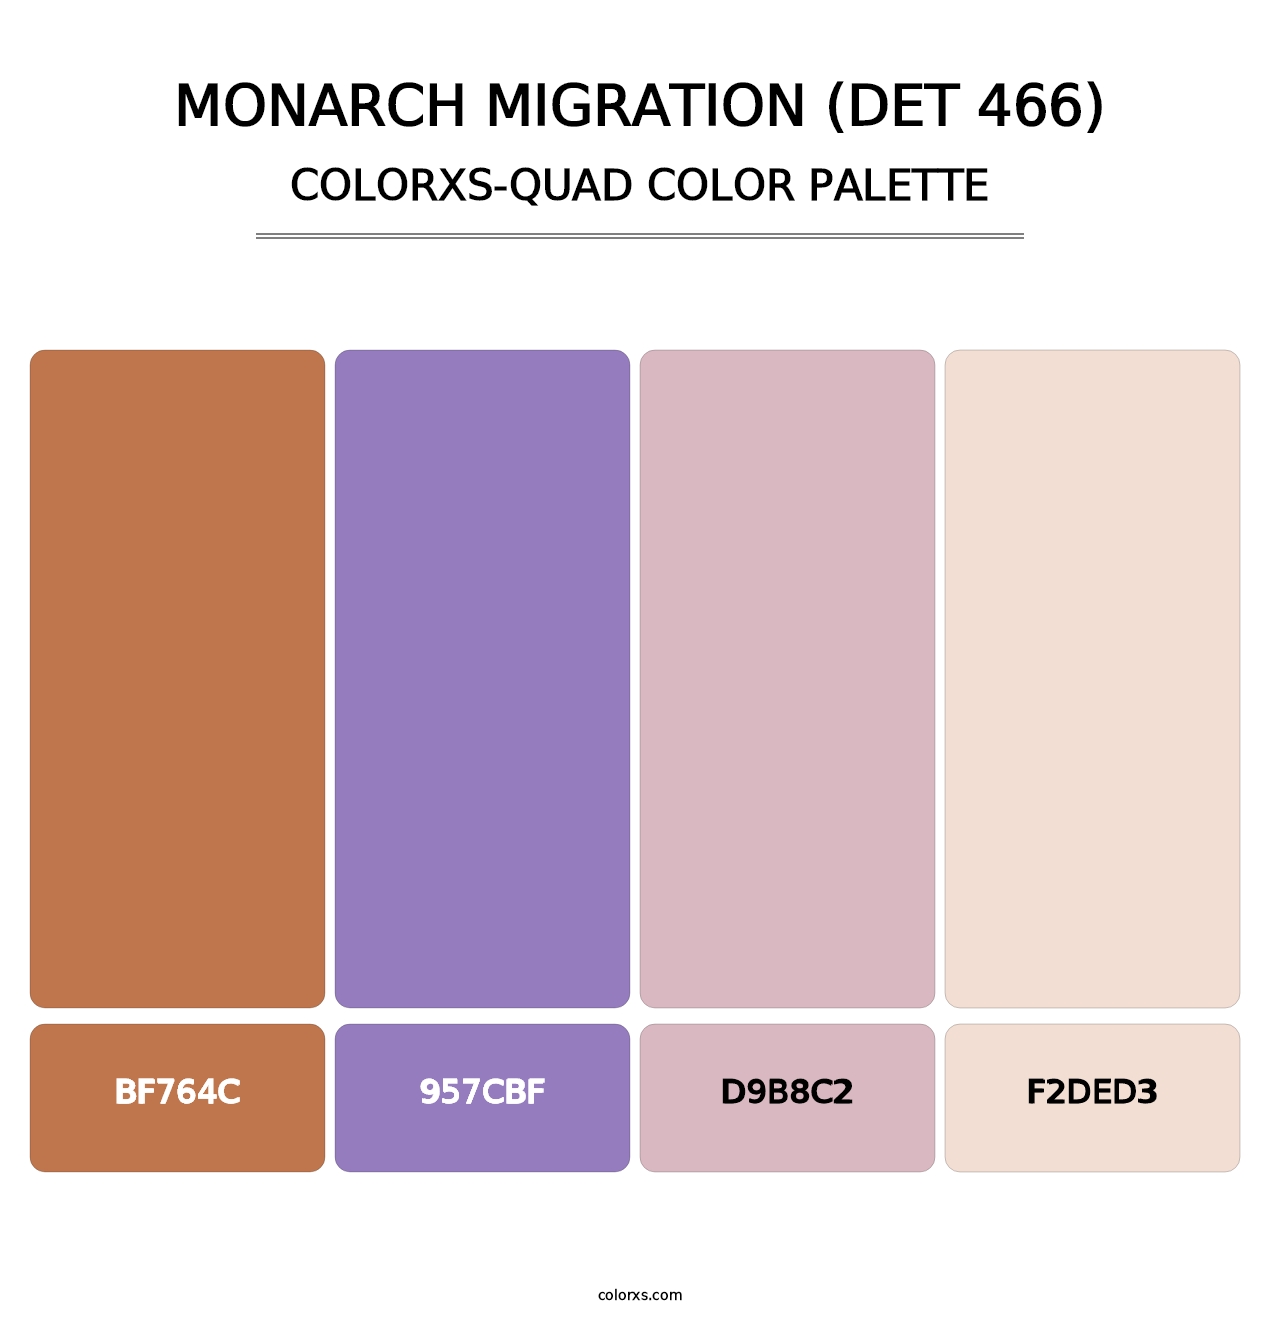 Monarch Migration (DET 466) - Colorxs Quad Palette